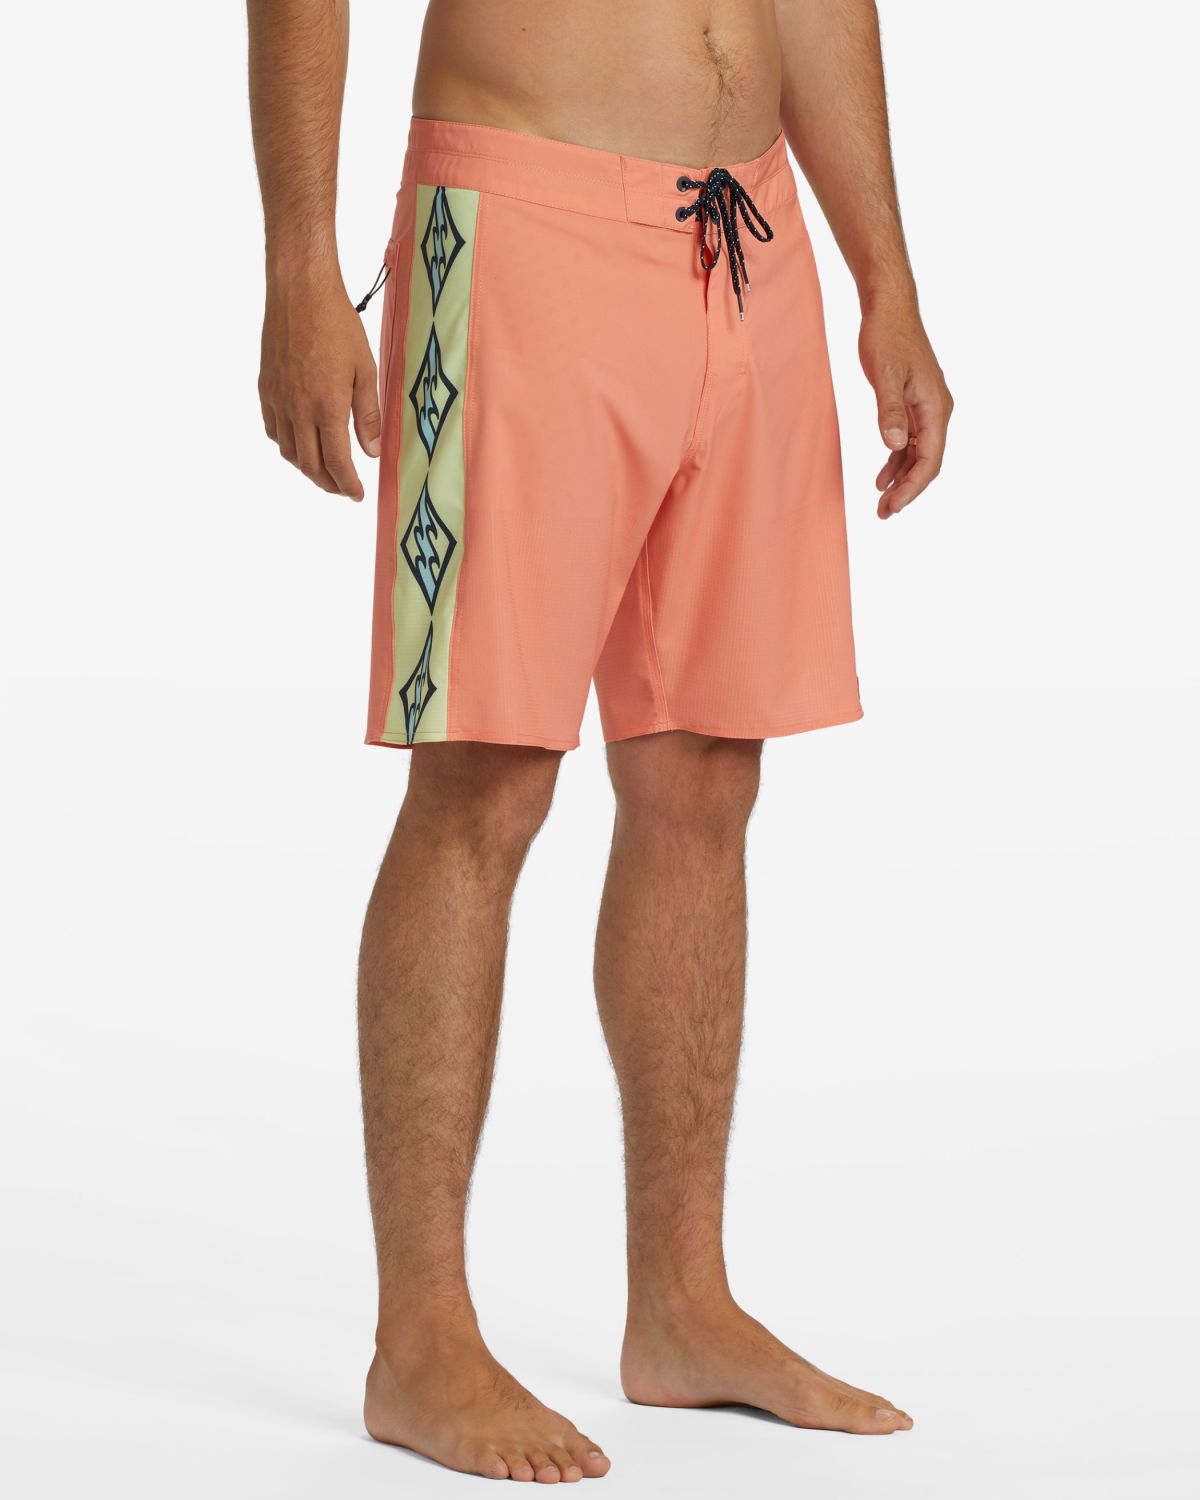  מכנסי בגד ים בהדפס לוגו של BILLABONG